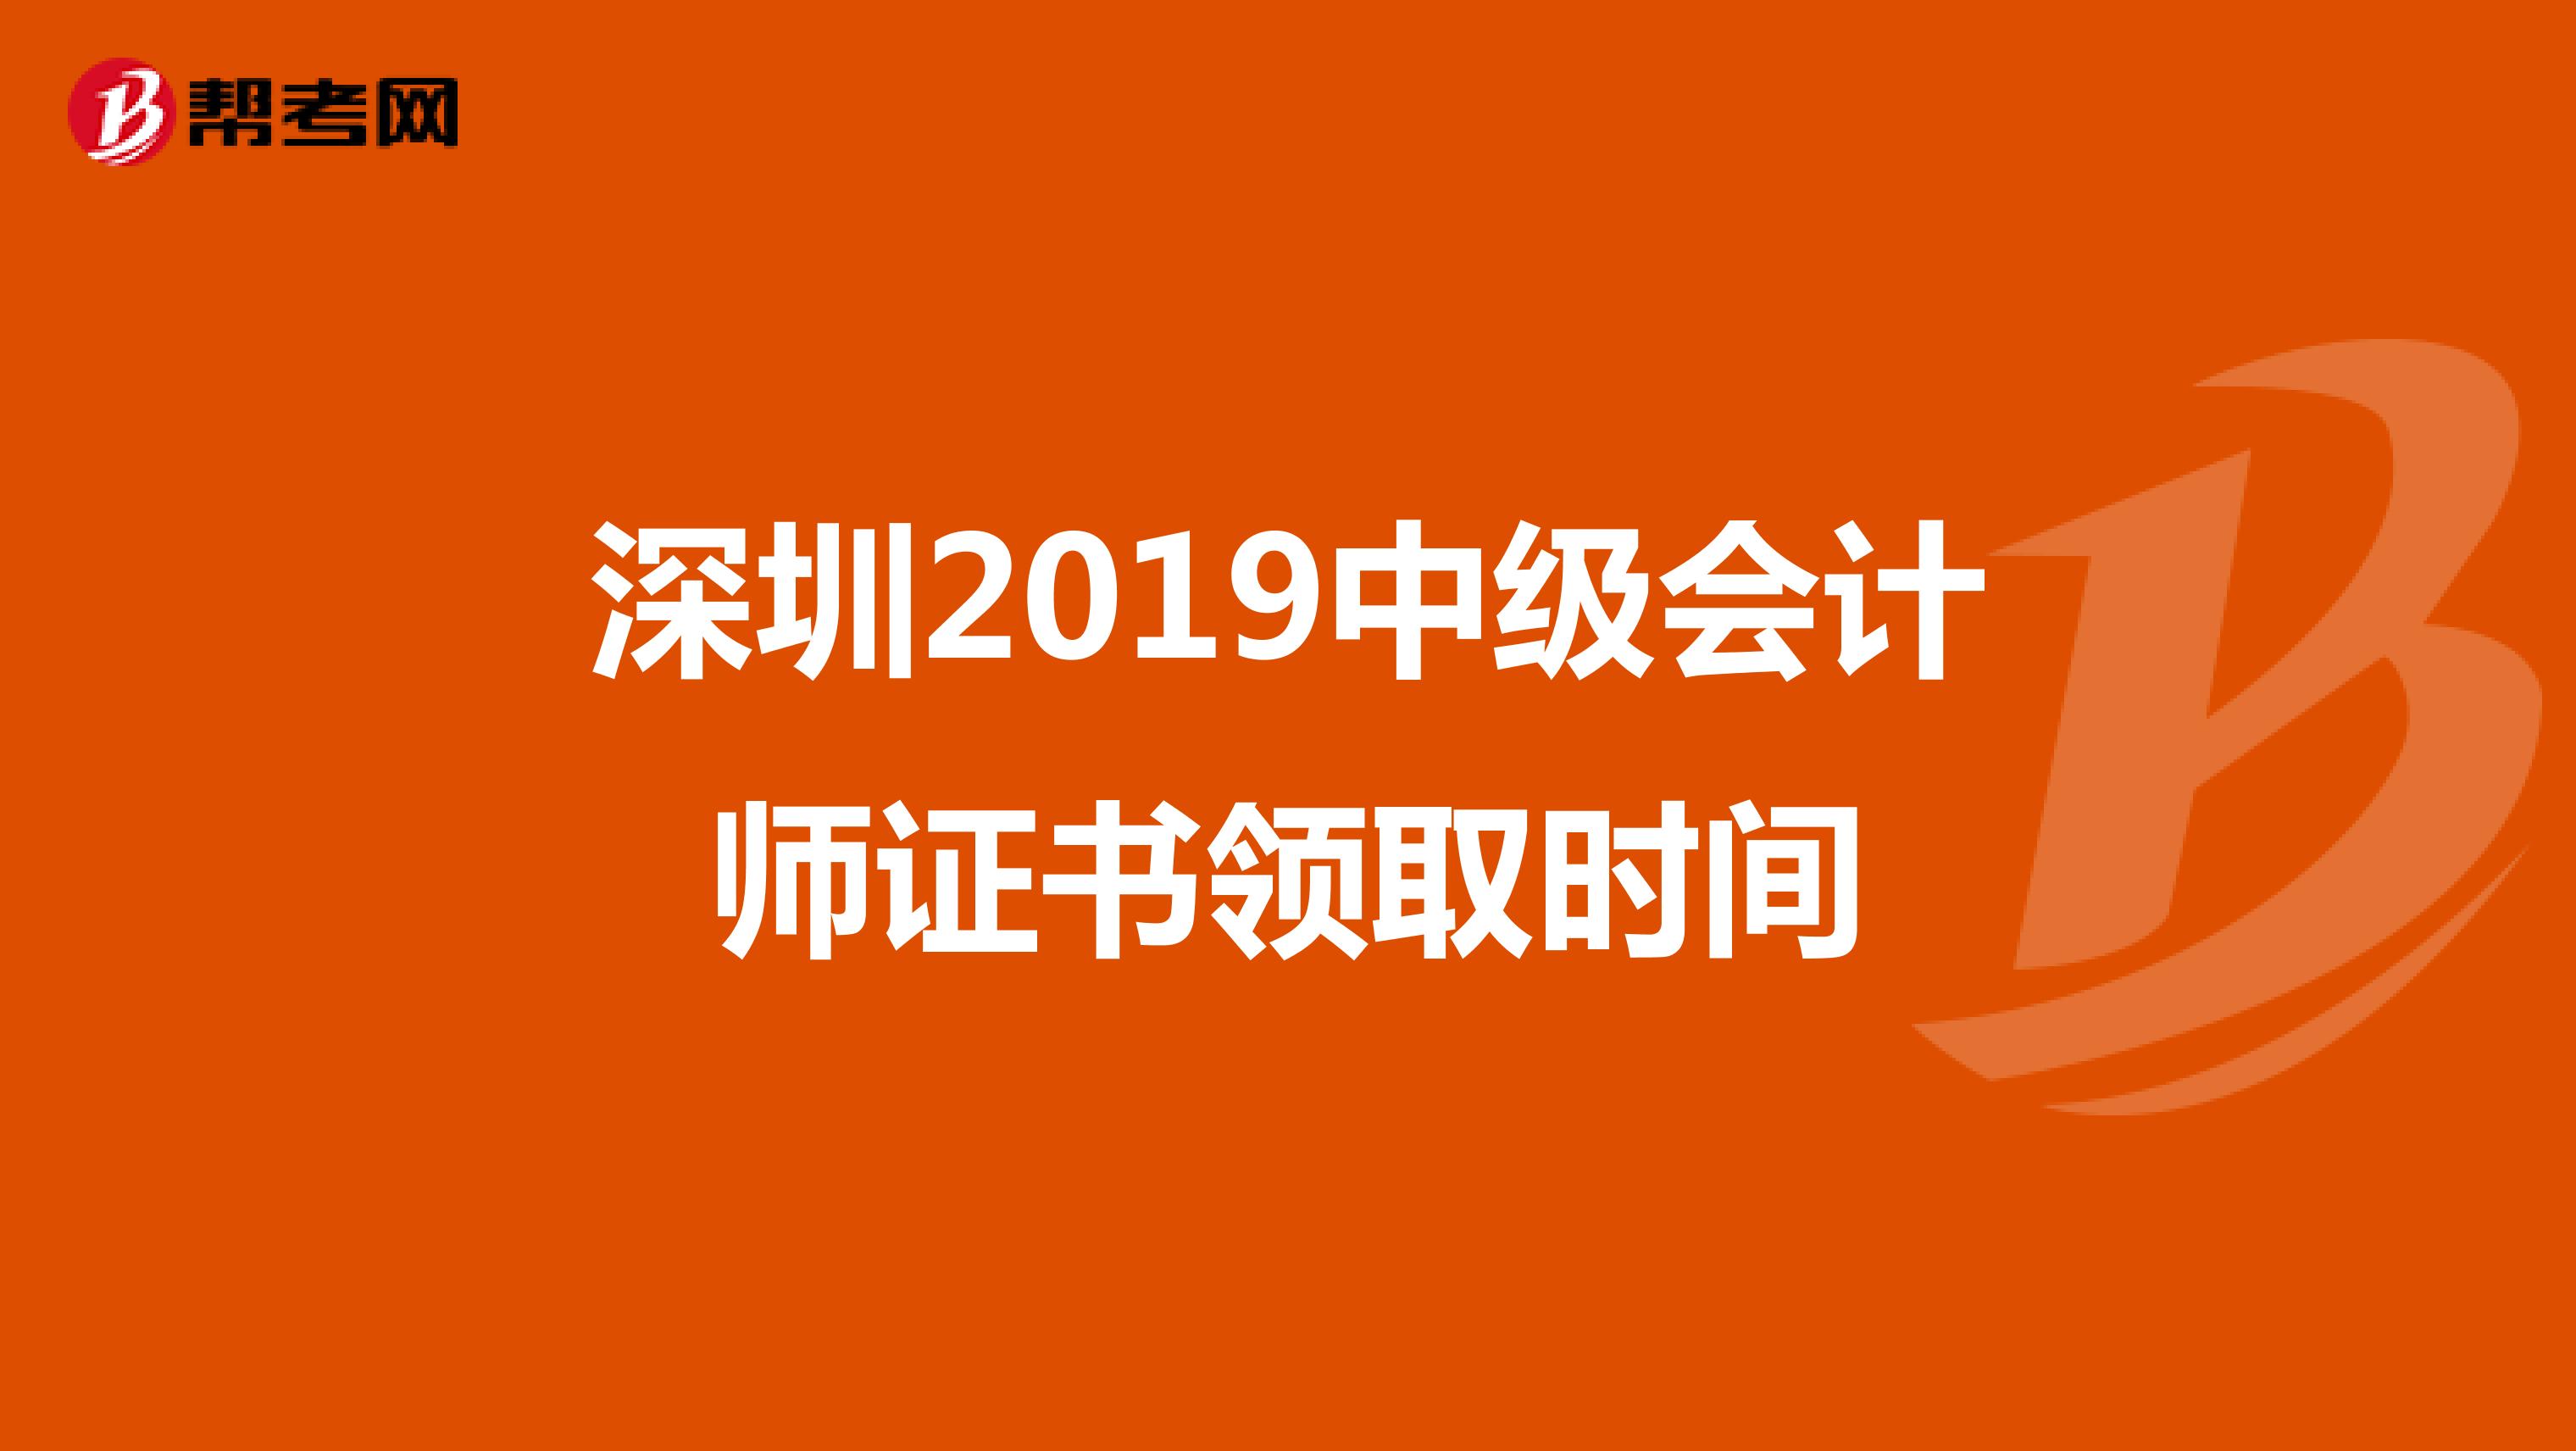 深圳2019中级会计师证书领取时间